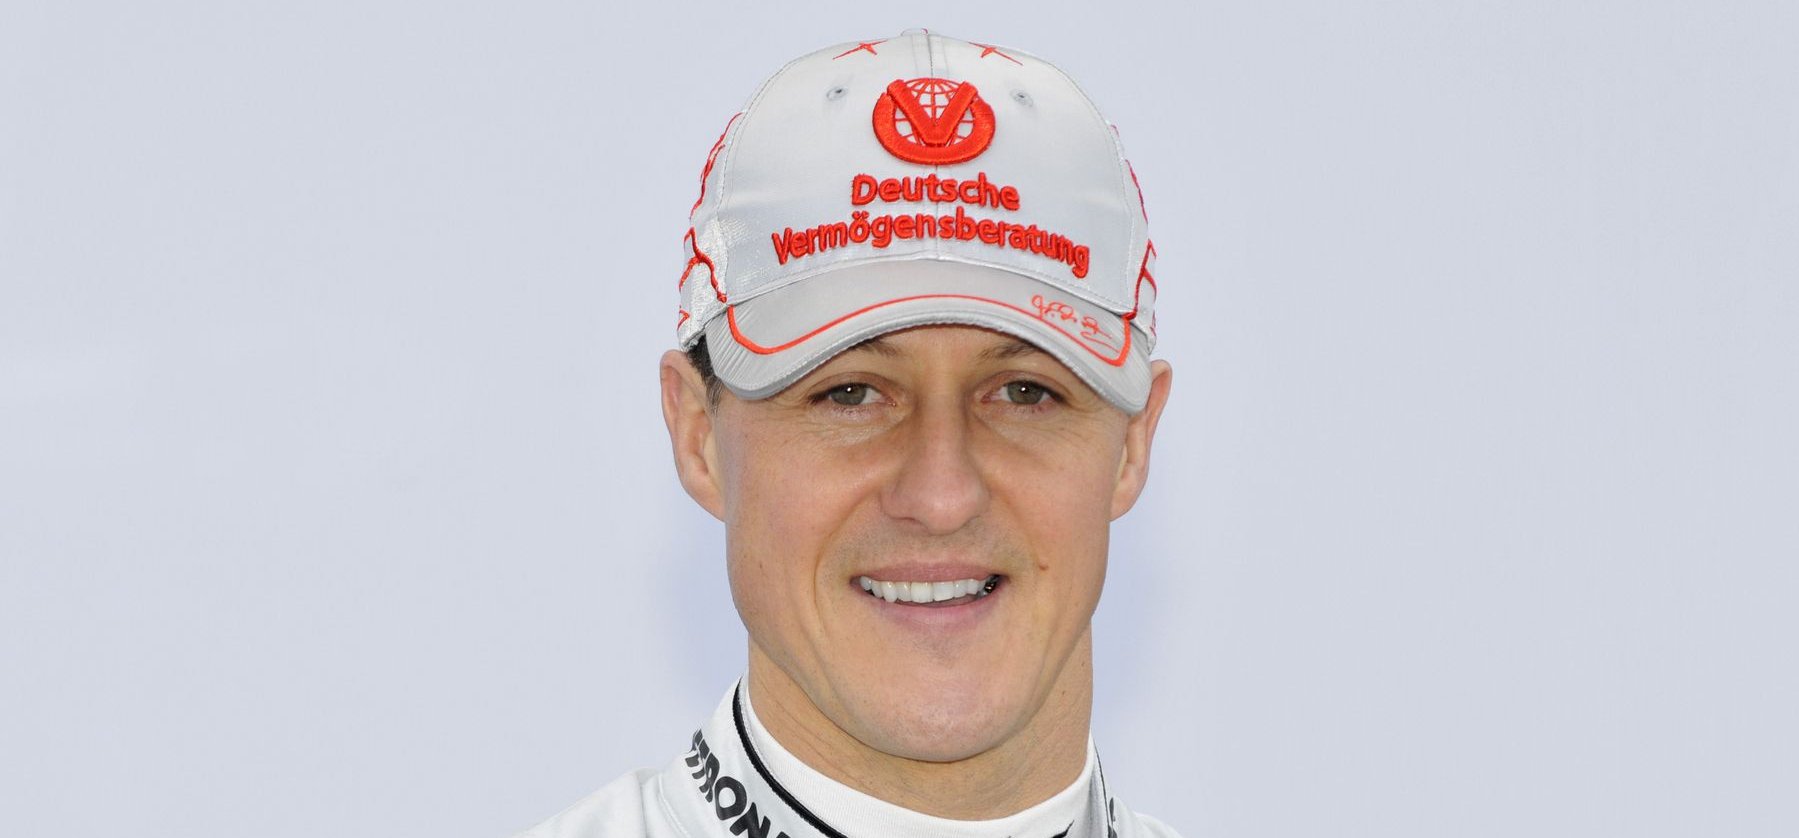 Nyolc év után megtört a csend Michael Schumacher állapotáról! A barátja, az F1 főnöke látta és beszélt róla!